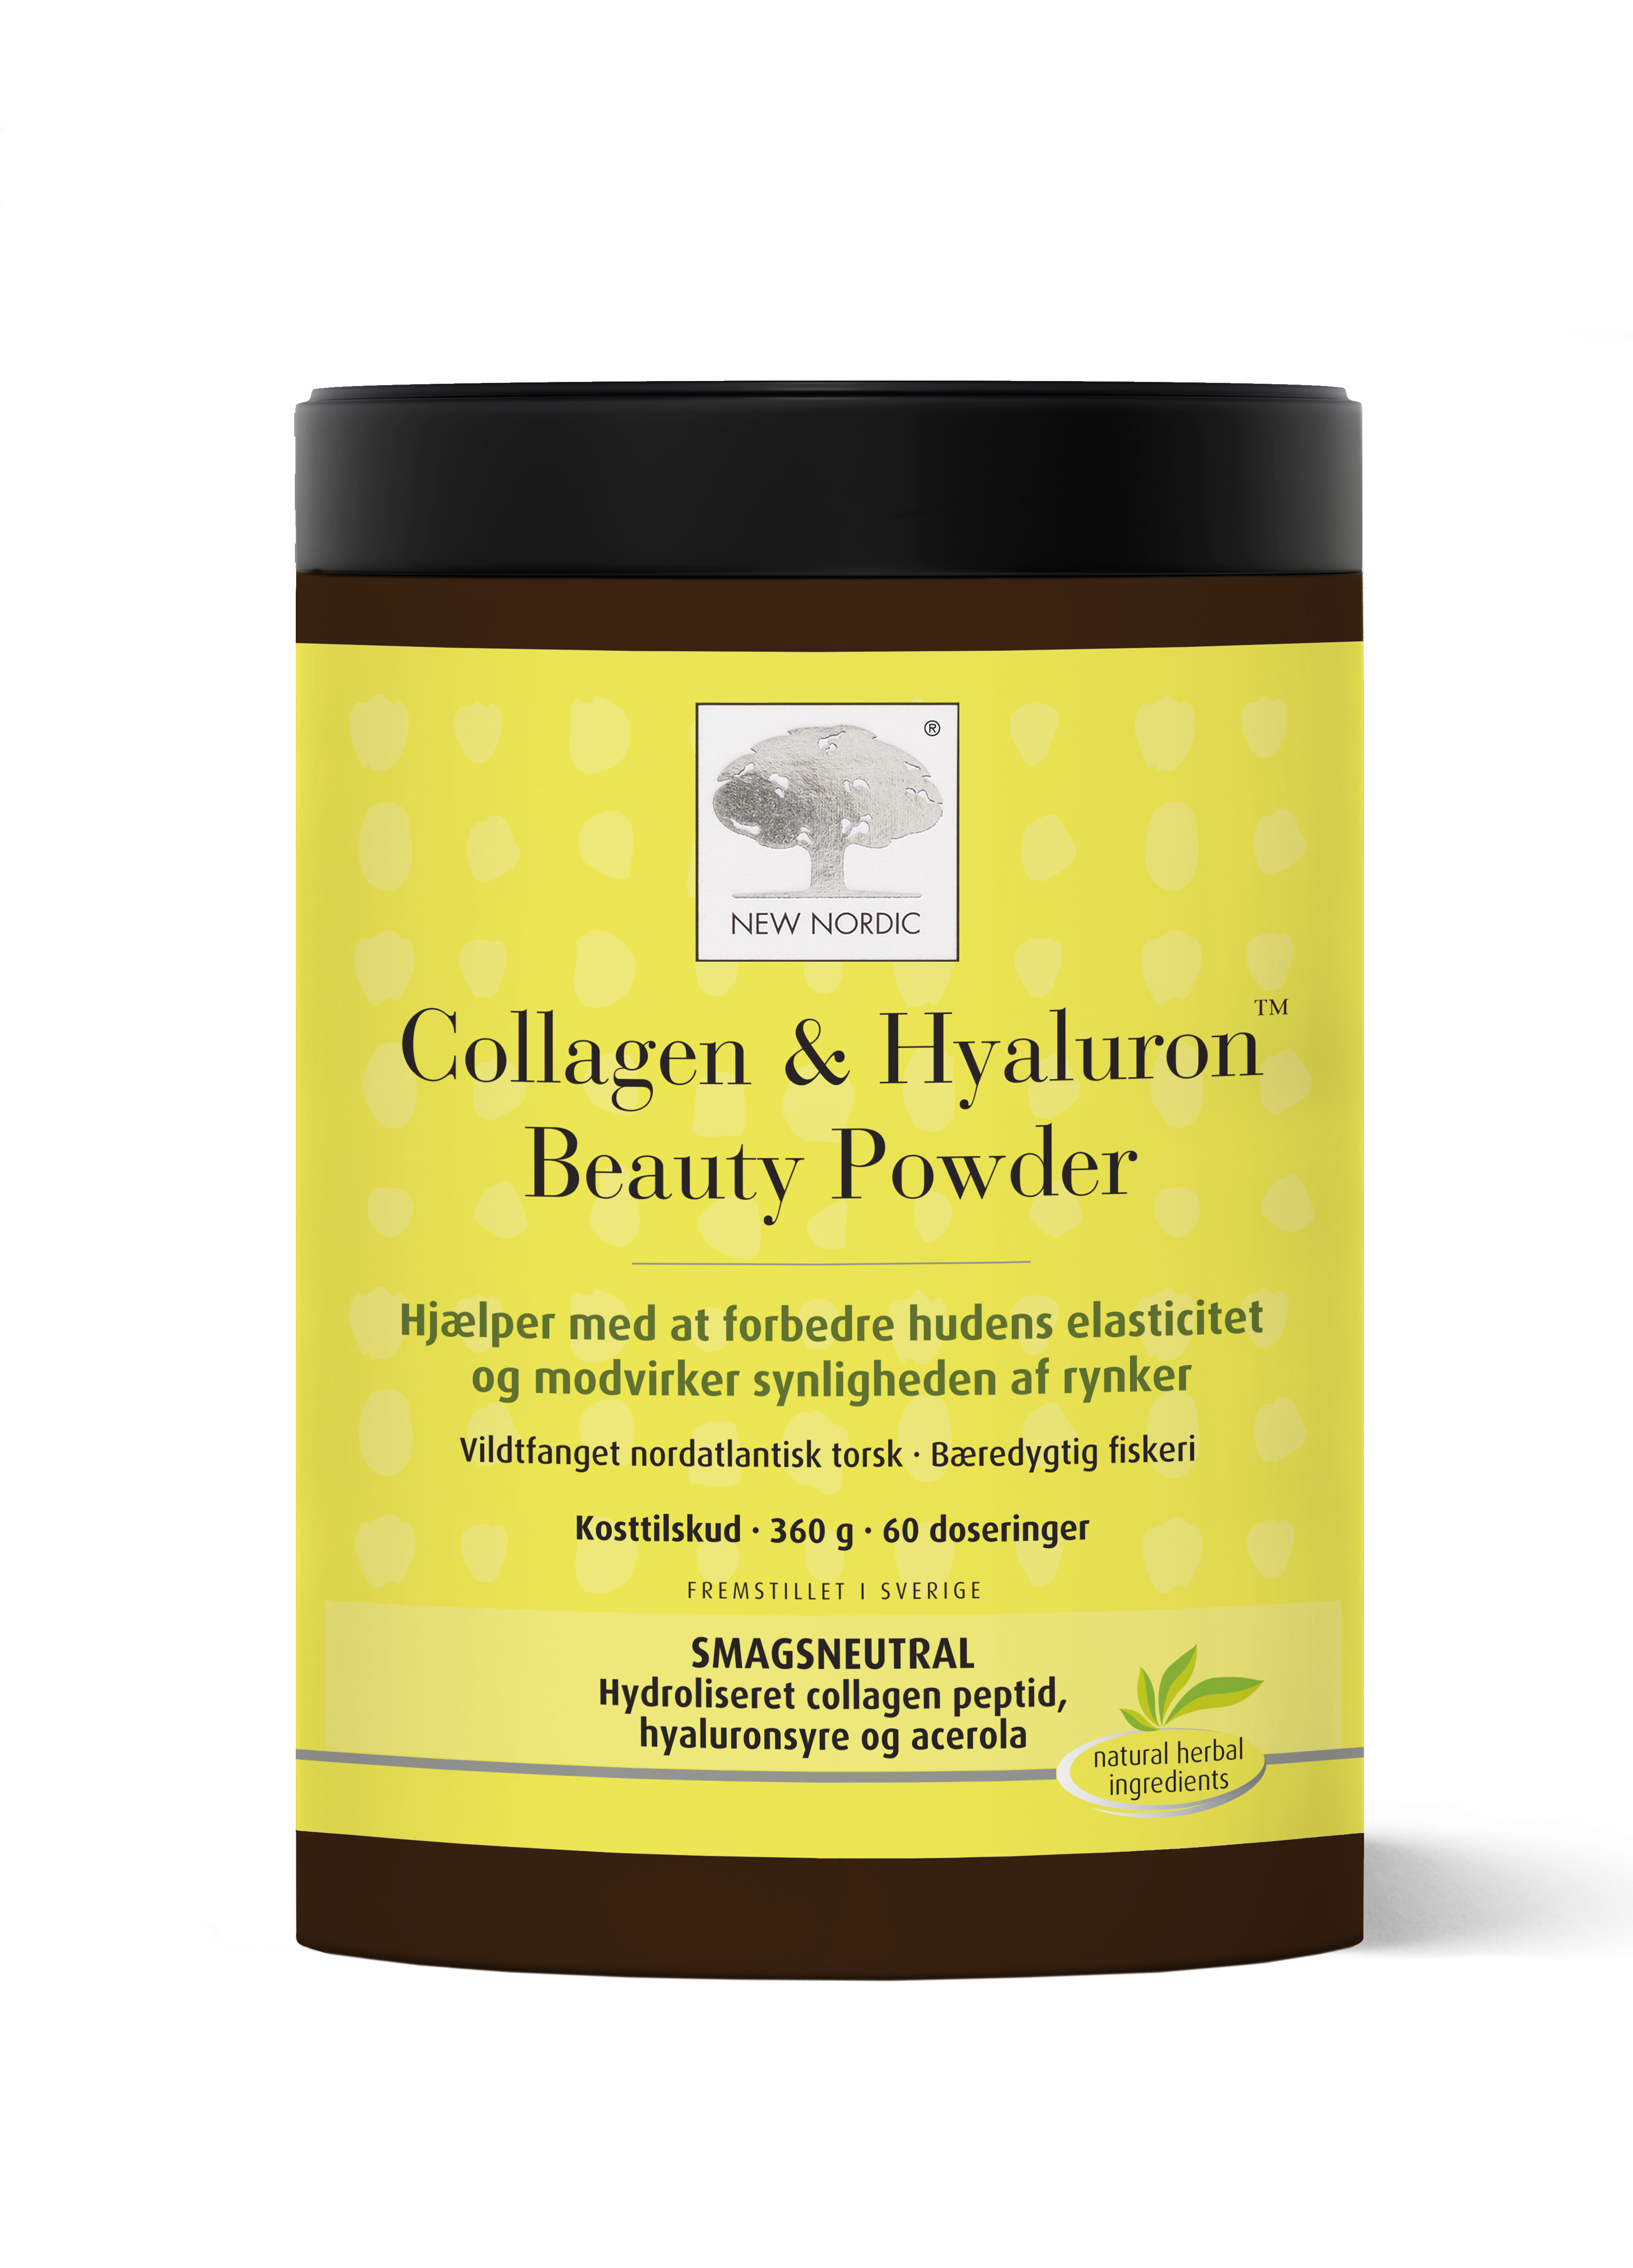 Billede af New Nordic Collagen & Hyaluron Beauty Powder 360g hos Helsegrossisten.dk